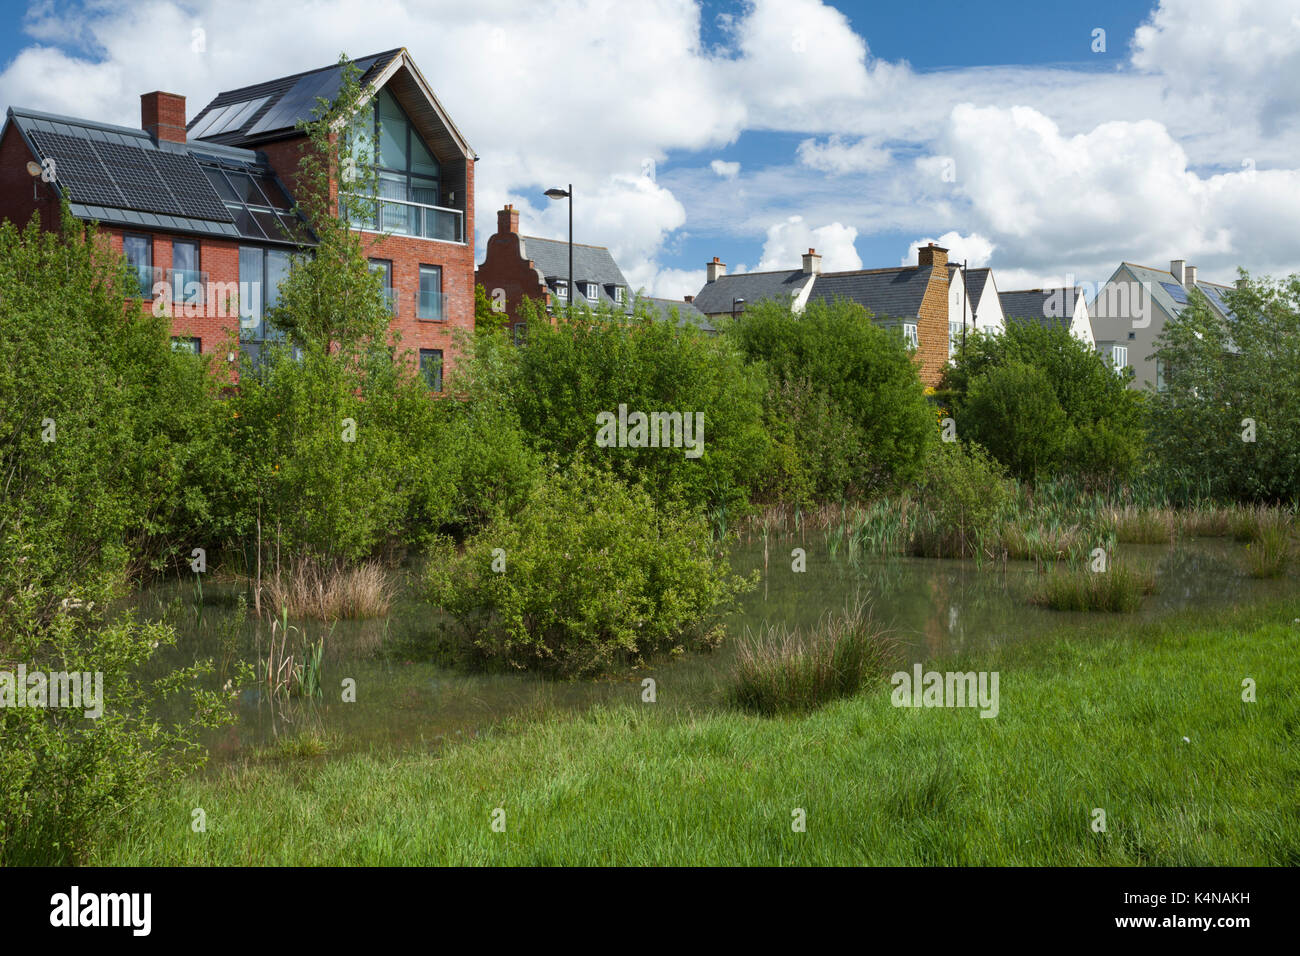 Un mix contemporaneo di stili architettonici accanto al parco con fauna selvatica-friendly bordi e zone umide di acqua piovana cattura, Northampton, Inghilterra. Foto Stock